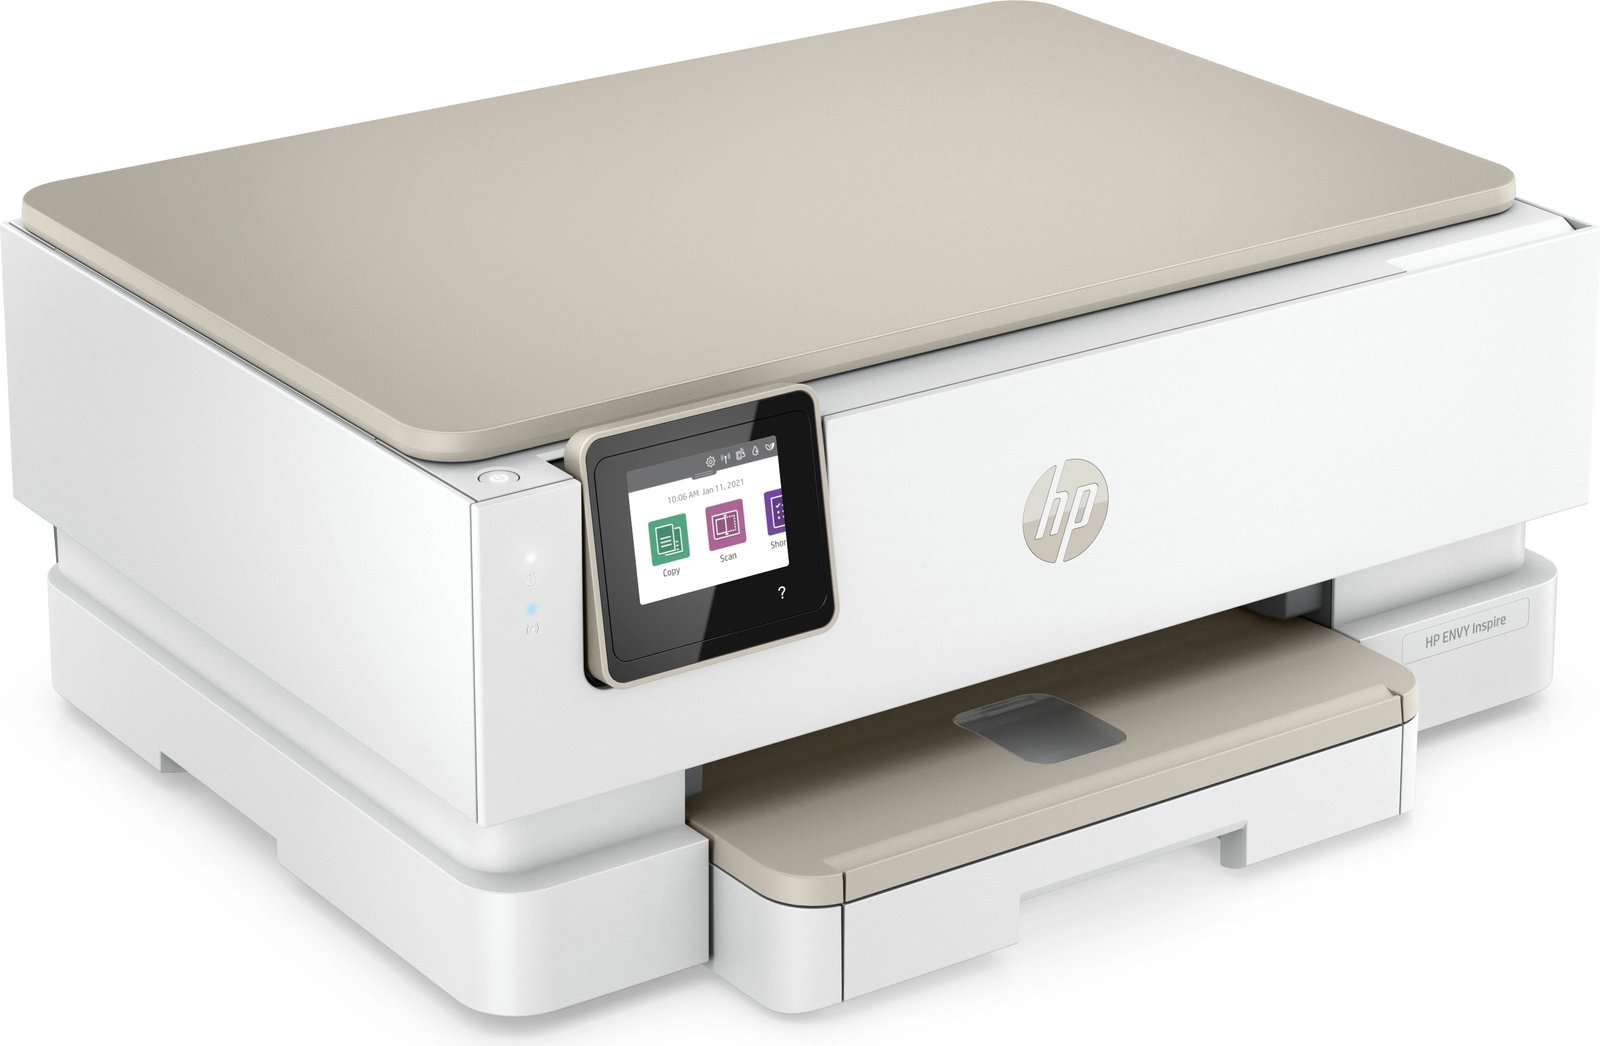 Printer HP, Envy Inspire 7220E